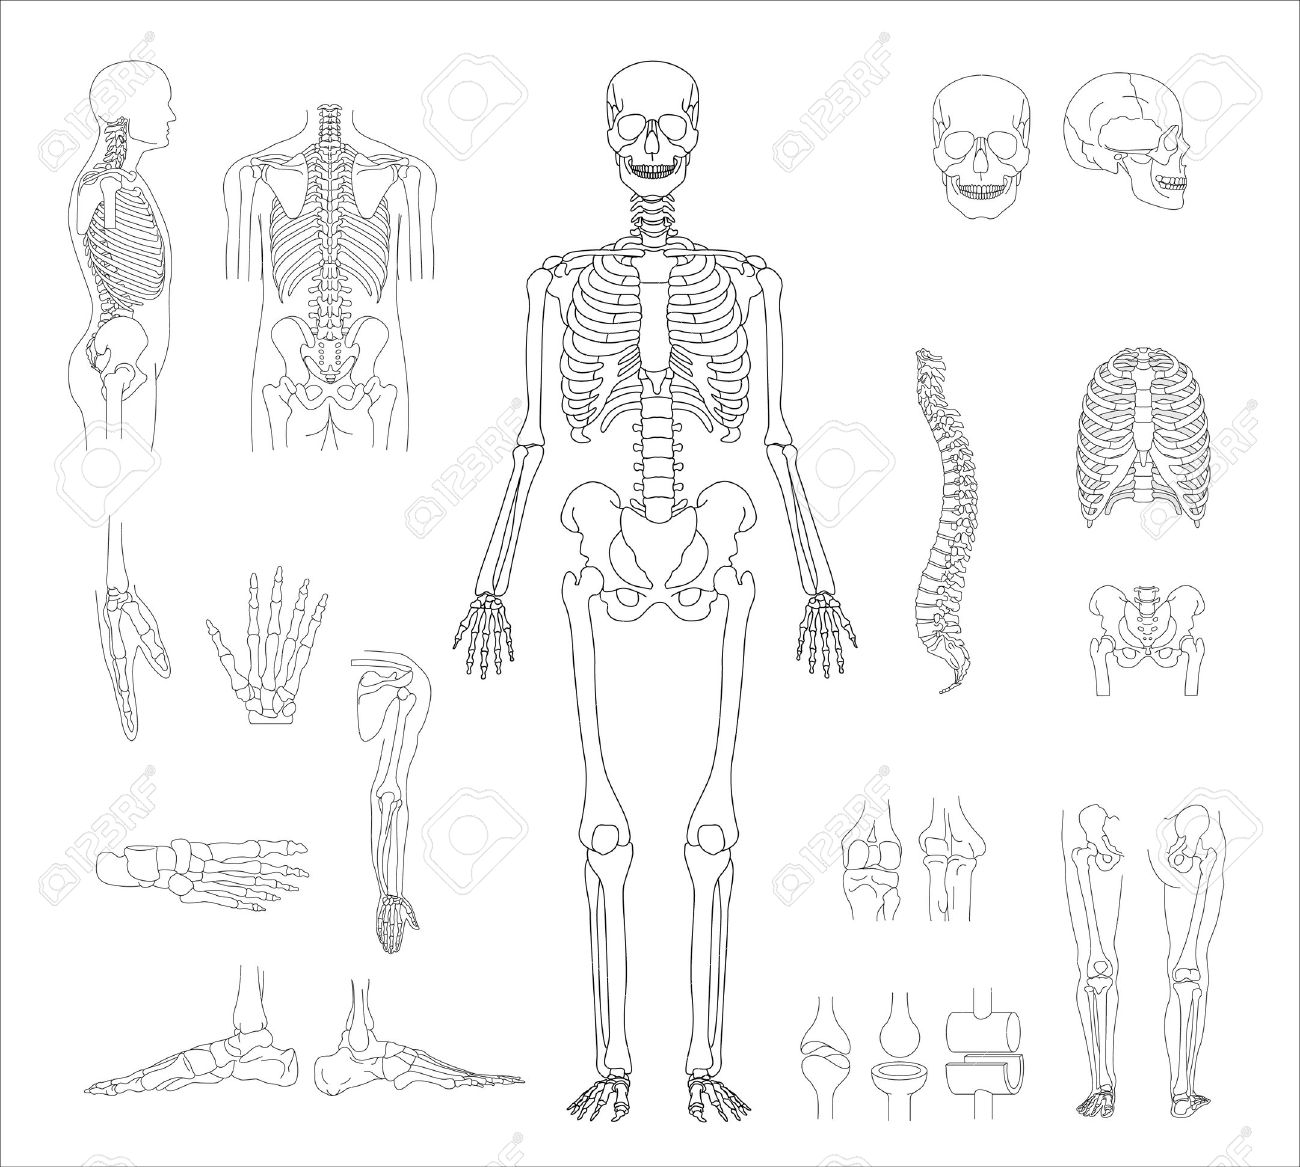 human skeleton sketch side